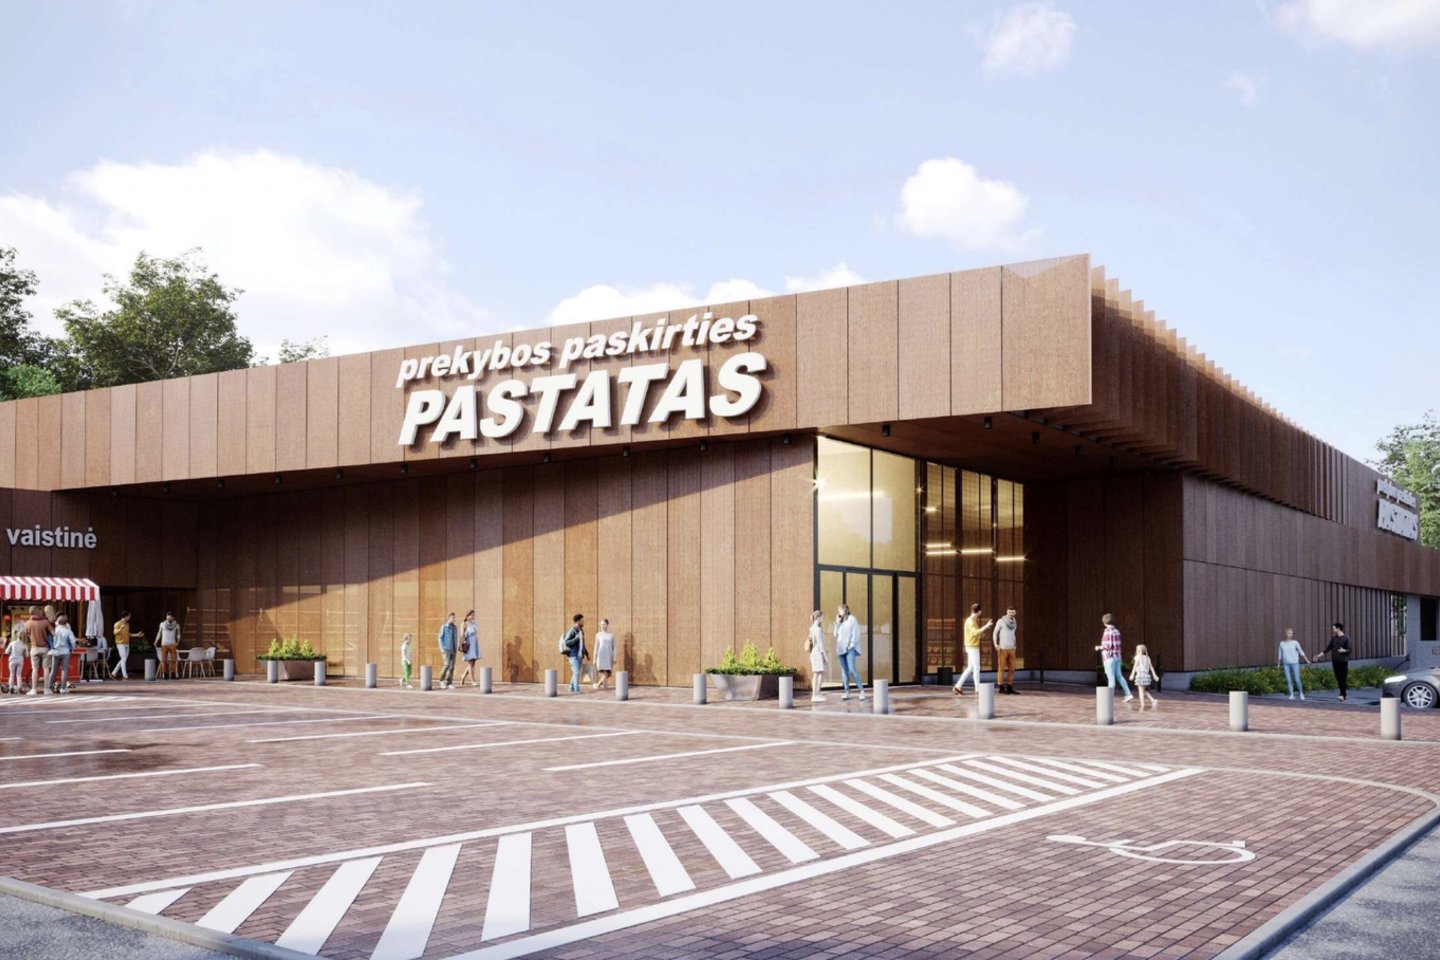 Vilniaus regioninė architektūros taryba svarstė architektų biuro „313 architects“ prašymą dėl prekybos paskirties pastato Džiaugsmo g. 116, Vilniuje, statybos projektinių pasiūlymų – prašyta įvertinti sprendinius, atsižvelgiant į Architektūros įstatymo architektūros kokybės kriterijus.<br>Vizual.